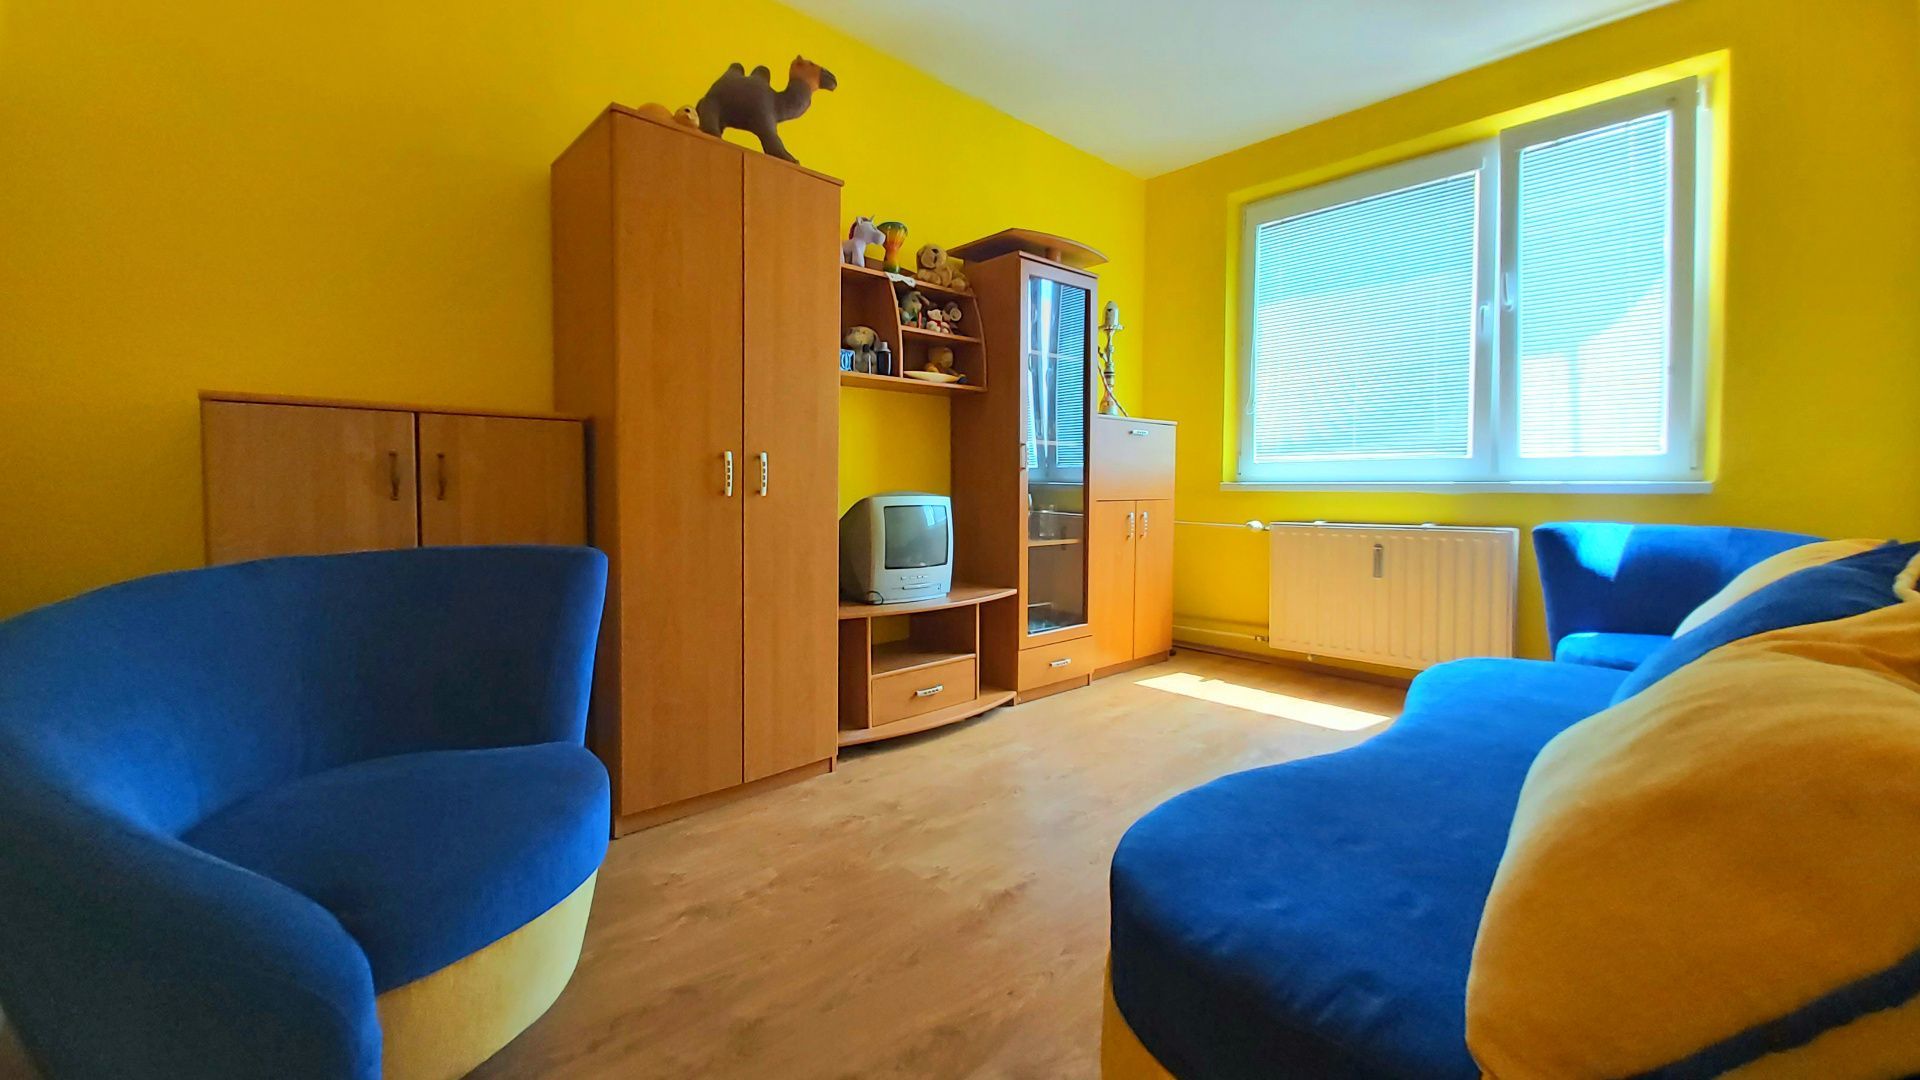 Predám pekný 3-izbový byt 64m2, 2x kumbál, loggia, Klimkovičova ulica, sídlisko KVP Košice